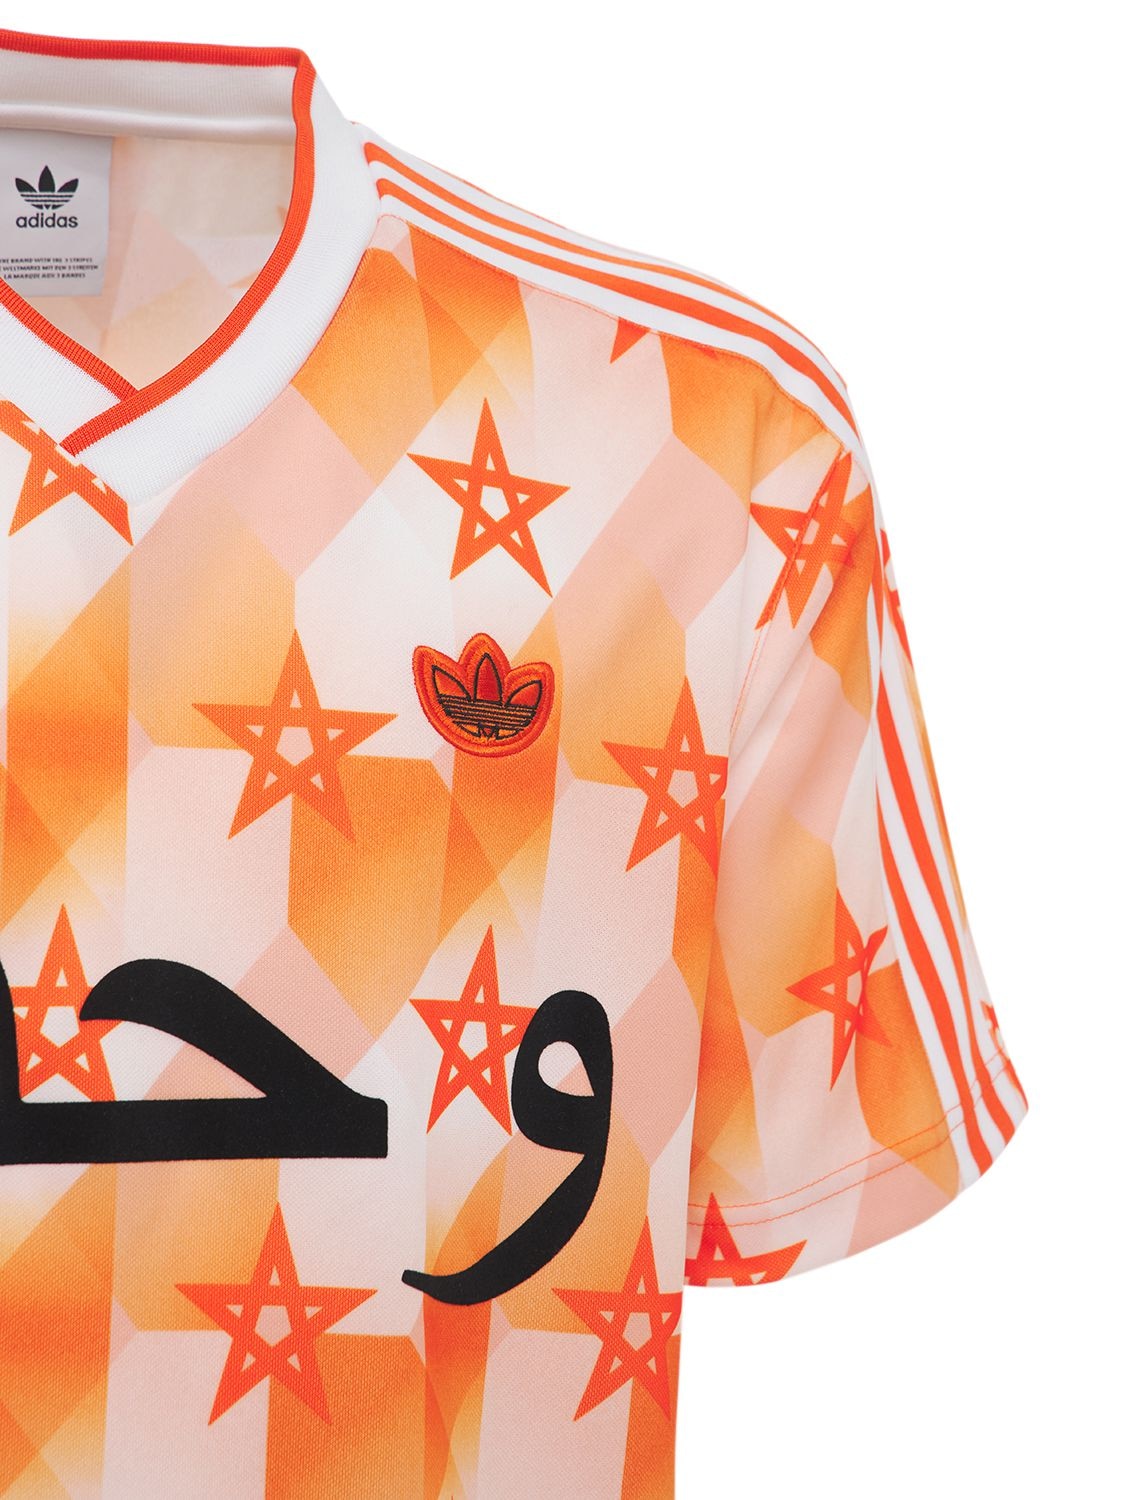 uitblinken Riskant hengel Adidas Originals Netherlands Jersey In Orange | ModeSens